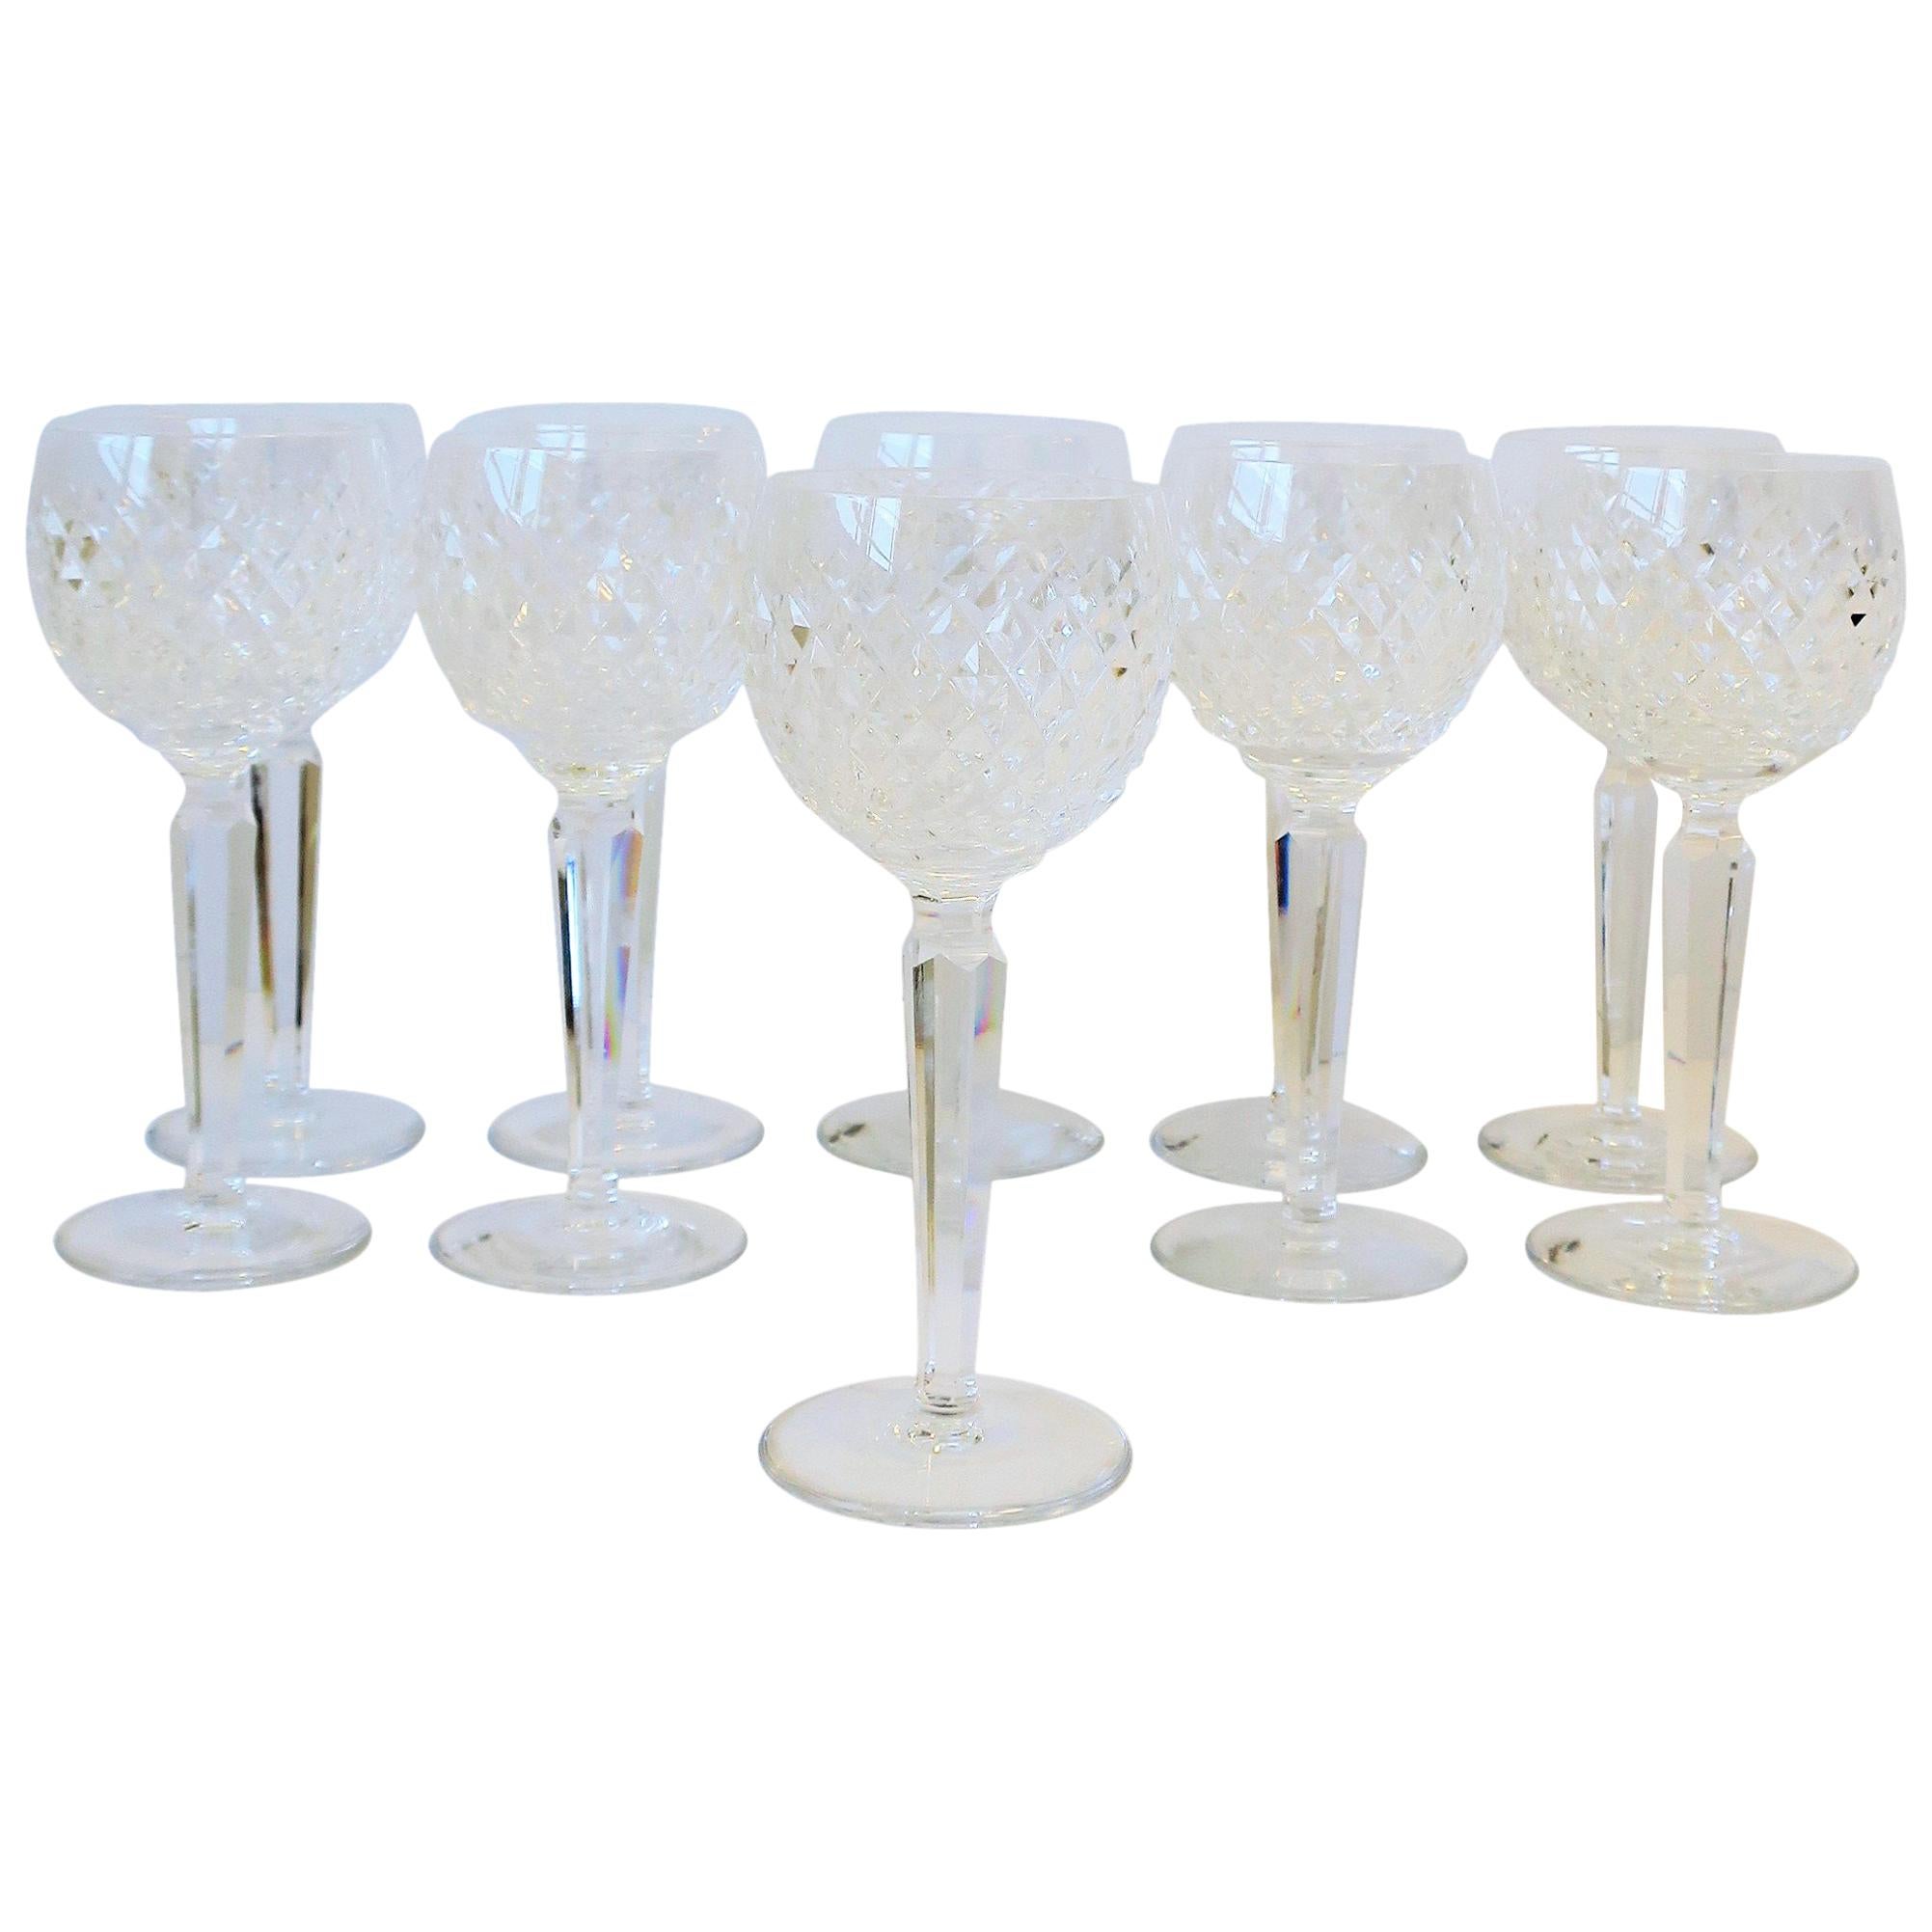 Vintage Waterford Crystal Wine or Water Goblet Glasses, Set of 10